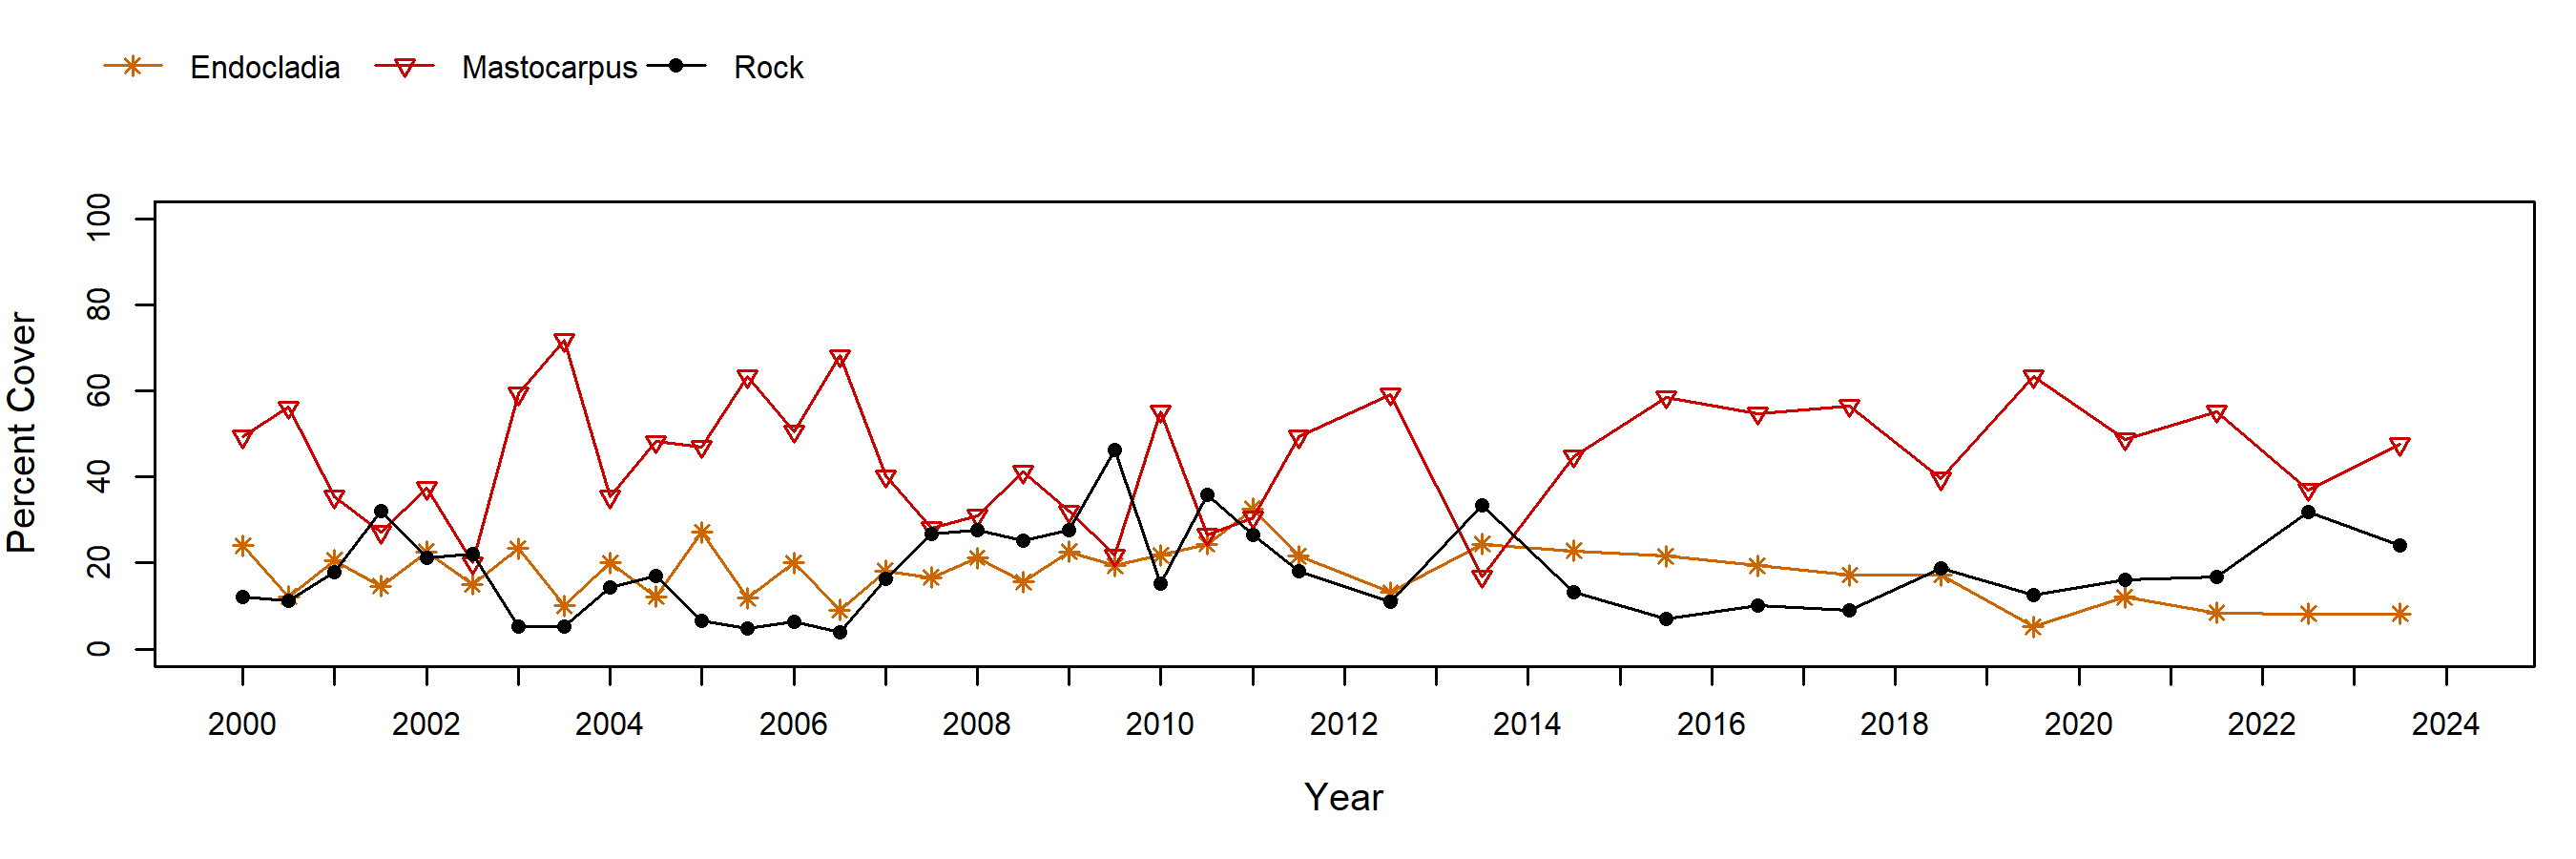 Stillwater Mastocarpus trend plot